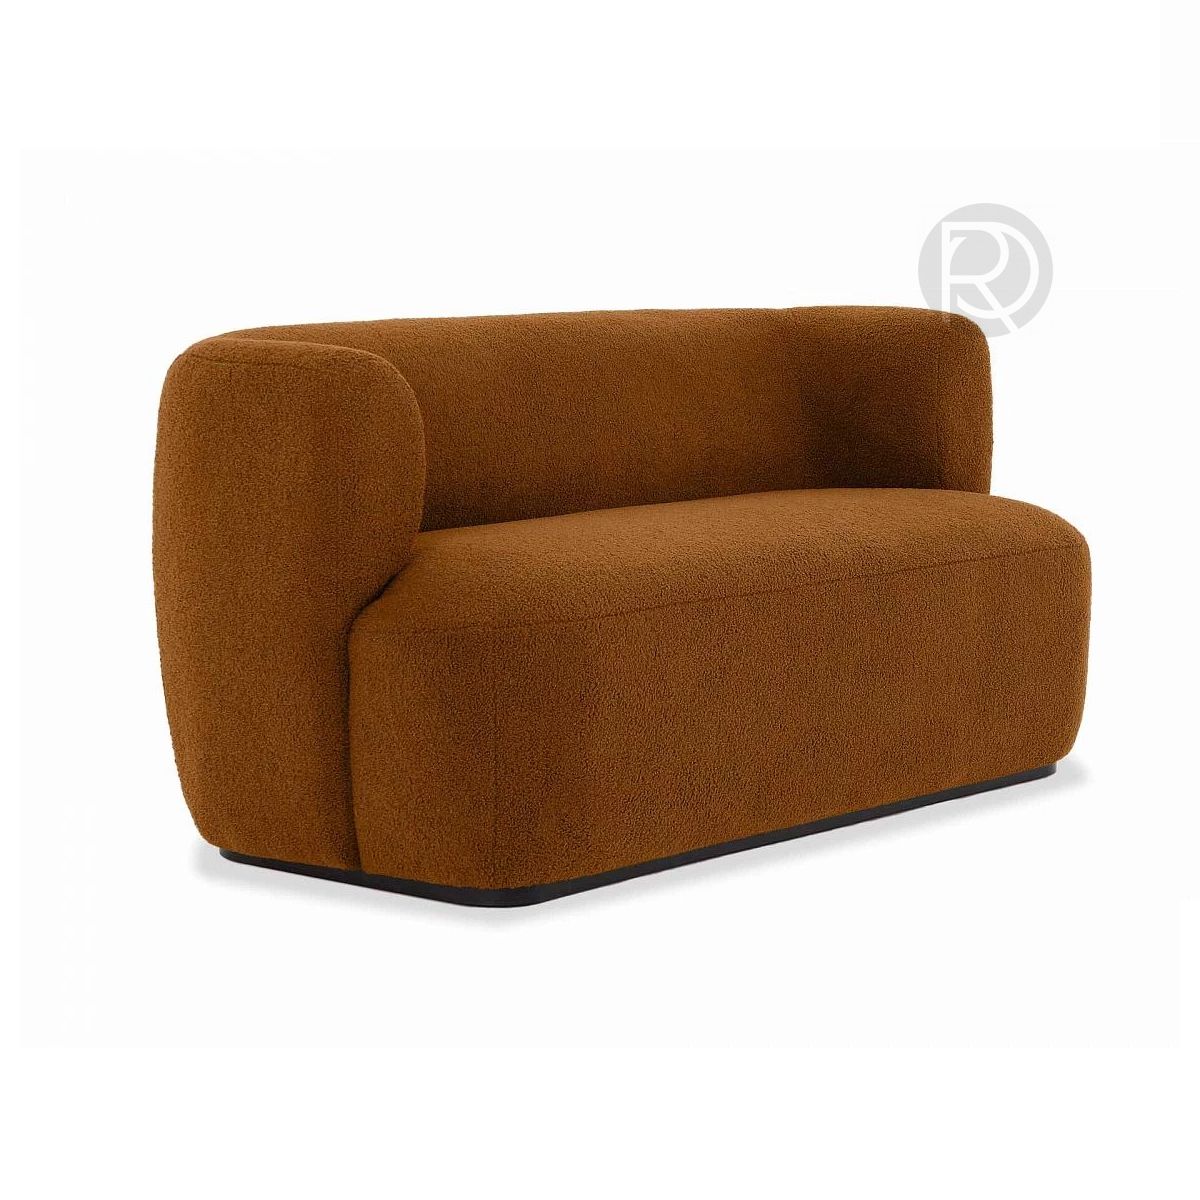 LIVORNO sofa by Romatti